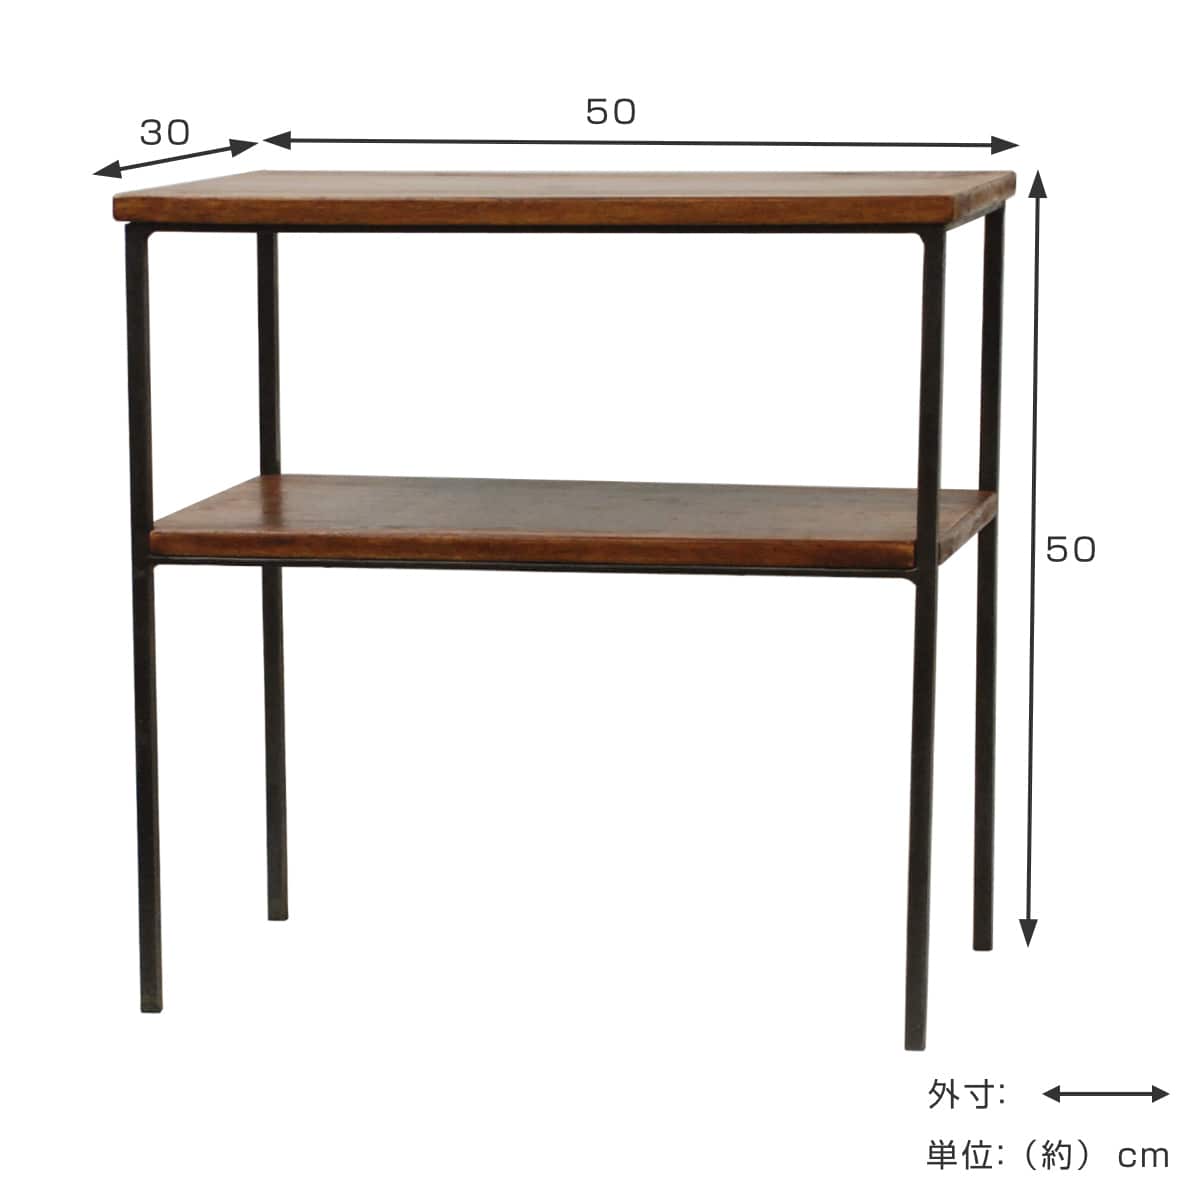 サイドテーブル 幅 木製 ラック アイアン ナイトテーブル